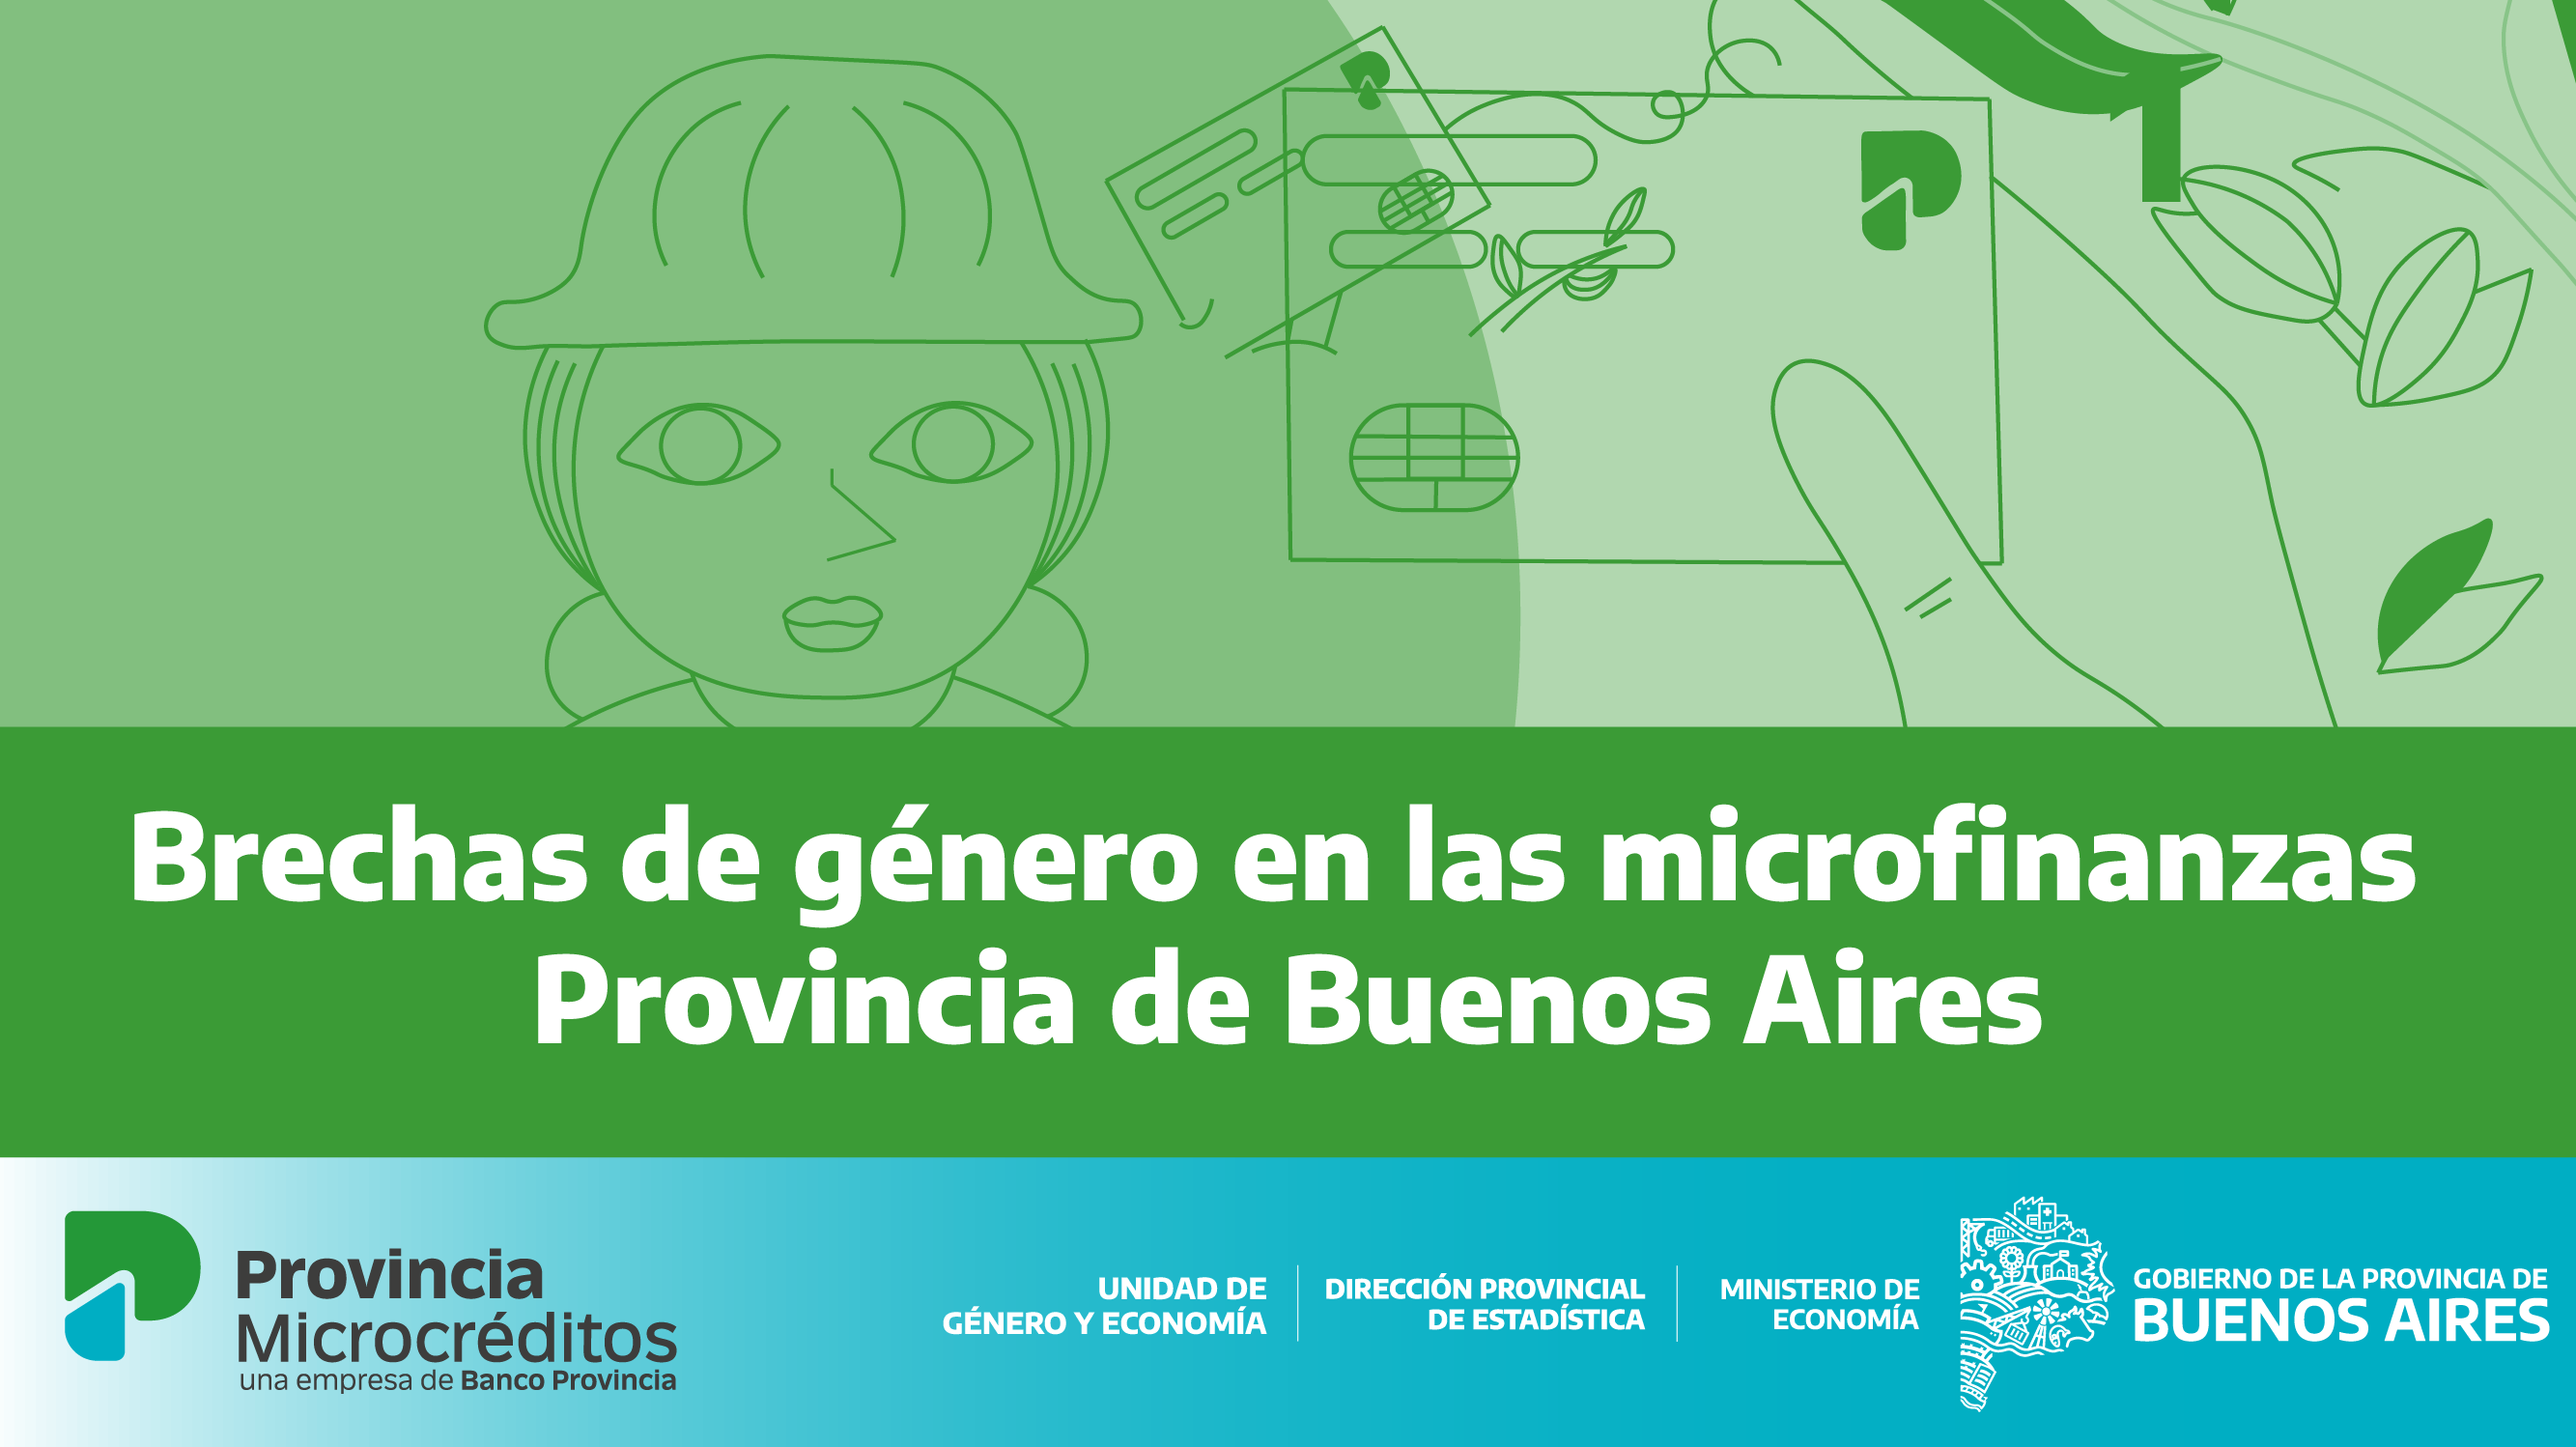 Brechas de género en las microfinanzas provincia de Buenos Aires. 